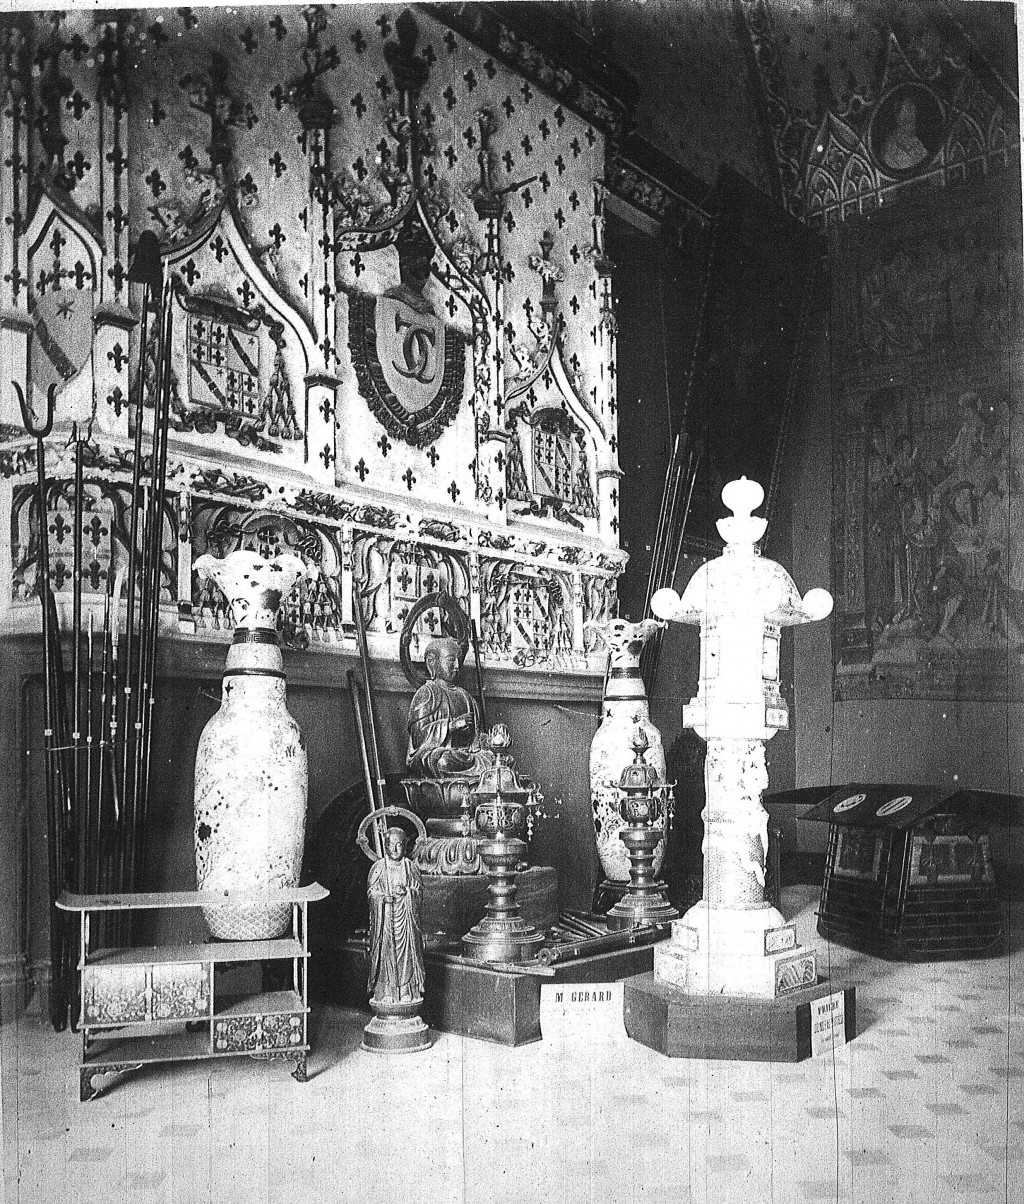 Photographie en noir et blanc d'un intérieur avec des objets asiatiques